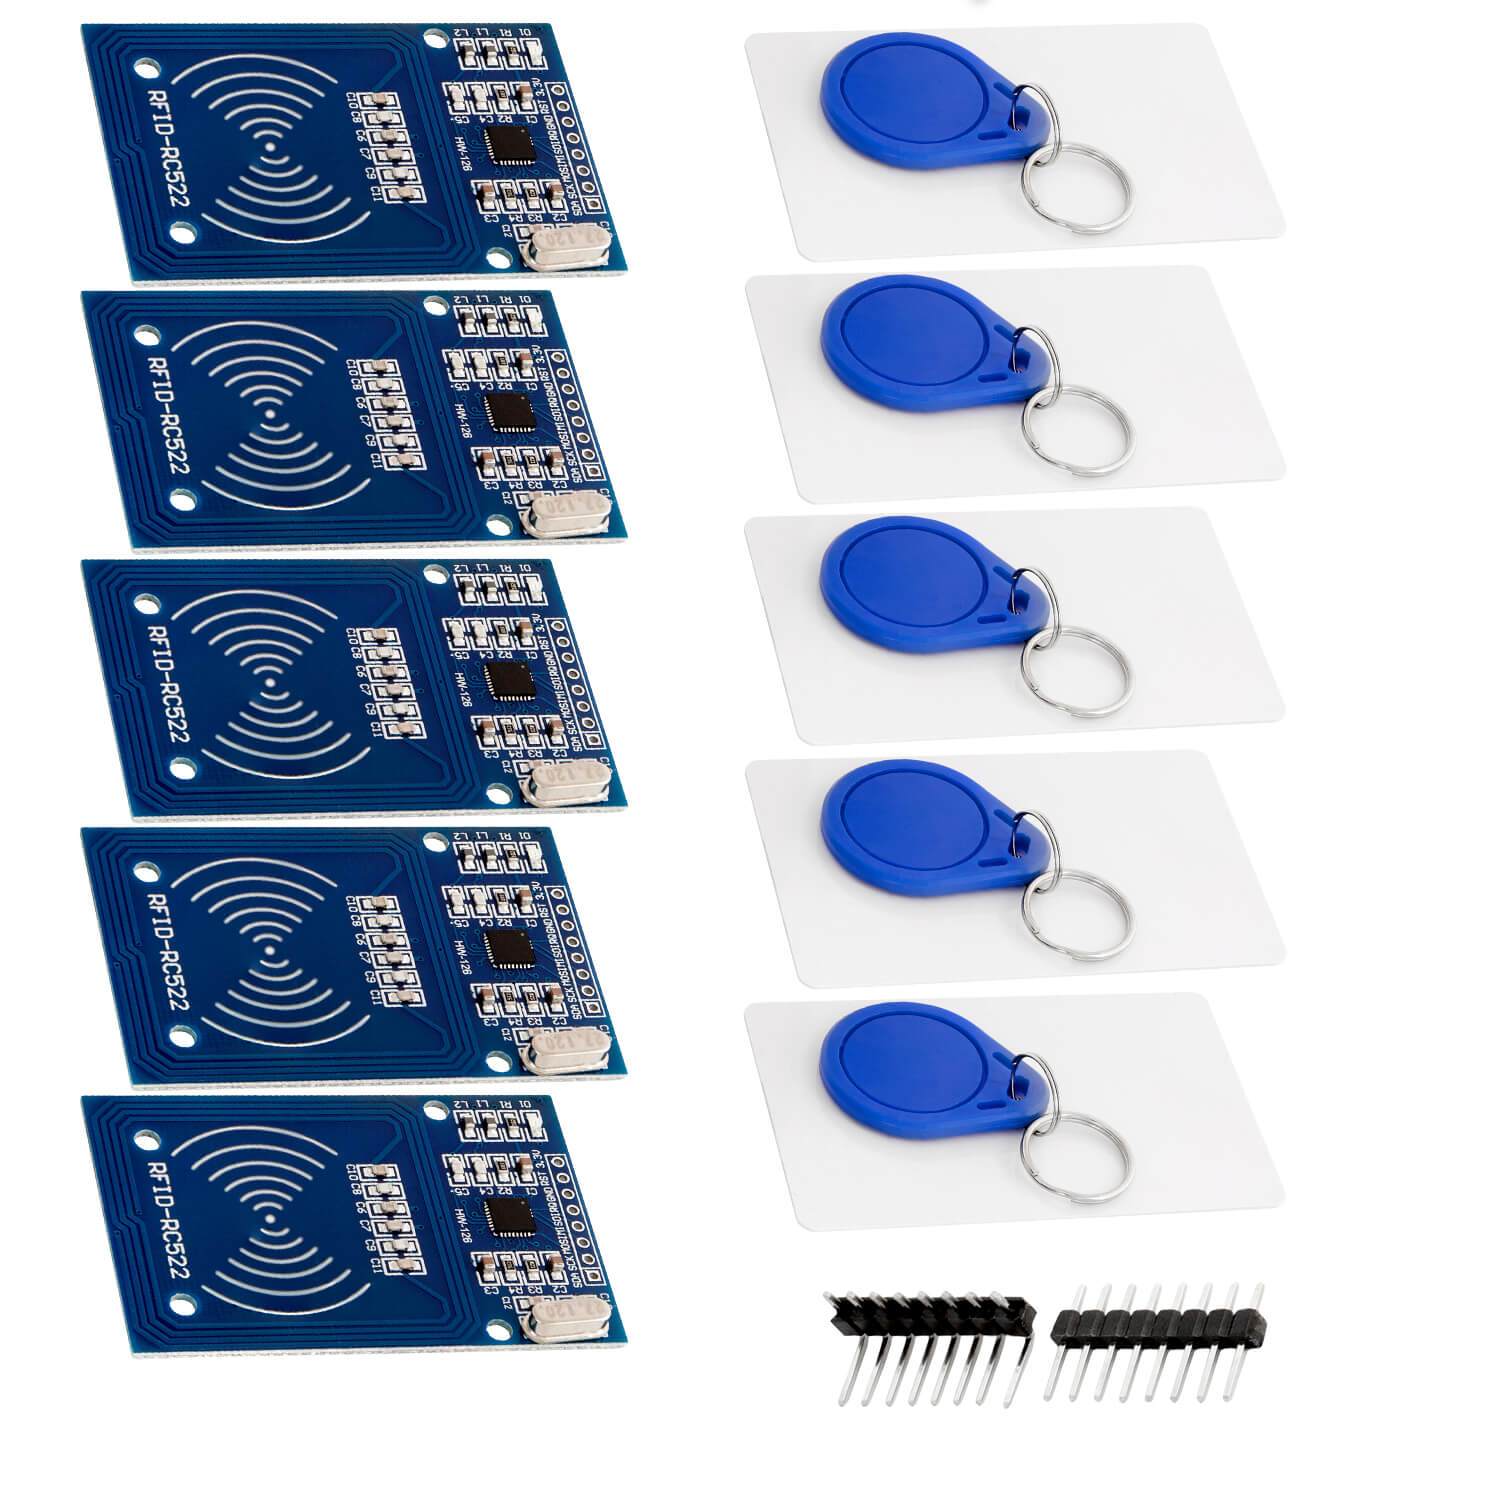 RFID Kit RC522 mit Reader, Chip und Card für Raspberry Pi und Co. (13,56MHz) - AZ-Delivery